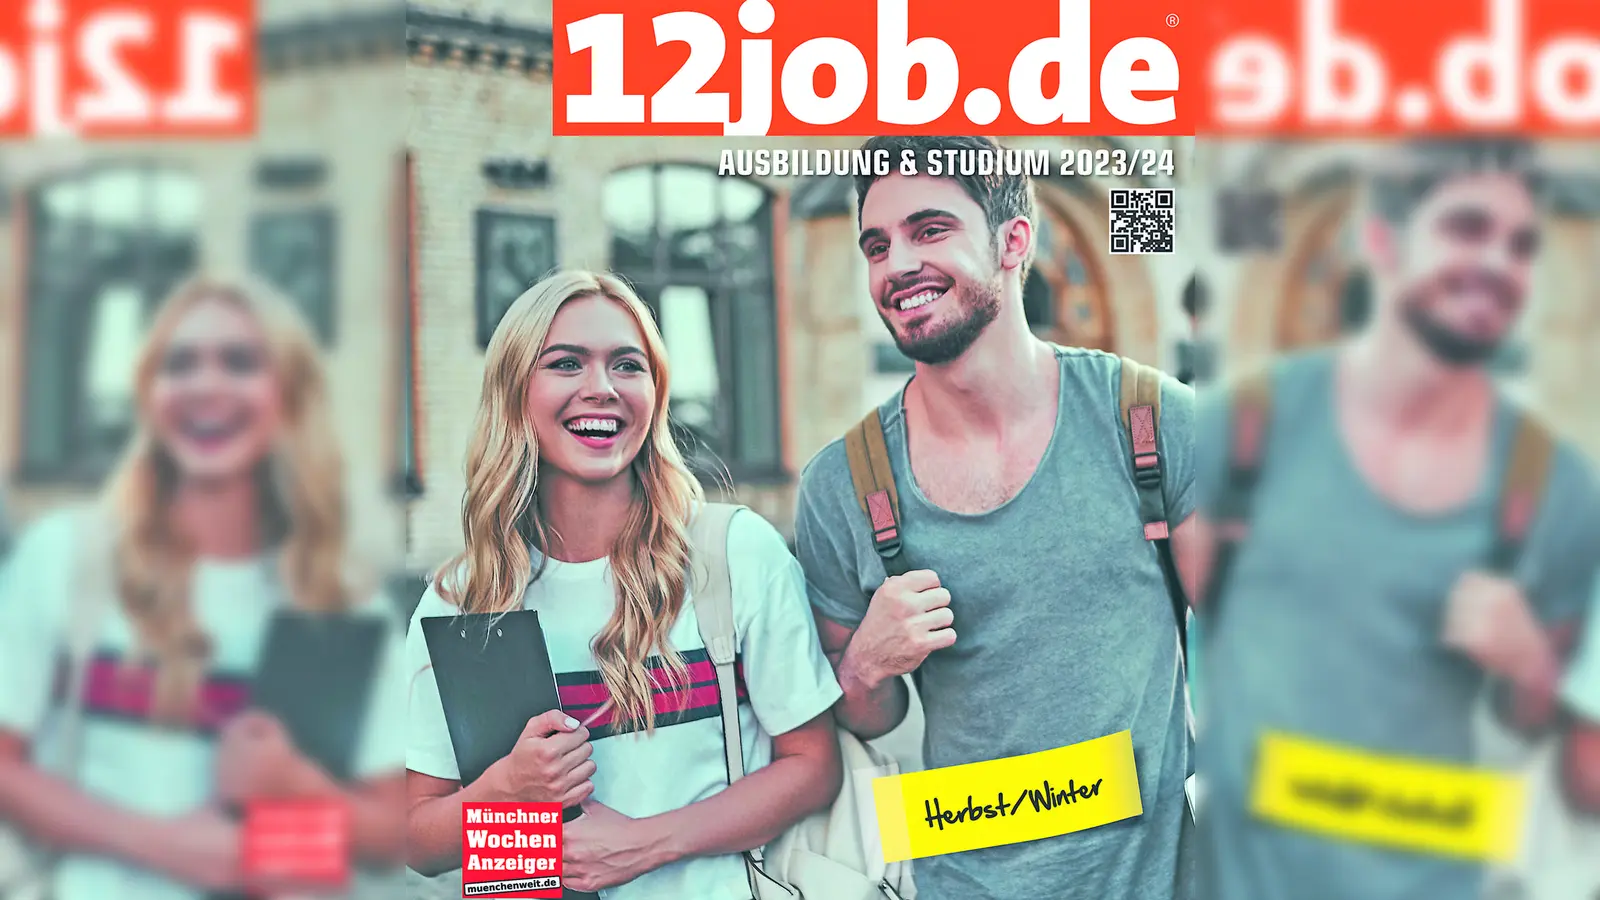 Das neue, kostenlose 12job-Magazin ist da und kann auch im Internet unter www.12job.de aufgerufen werden. Dort gibt es noch weitere Infos und Tipps. Das Magazin ist zudem bei den Münchner Wochenanzeigern (Moosacher Str. 56-58) erhältlich. (Foto: Colourbox)